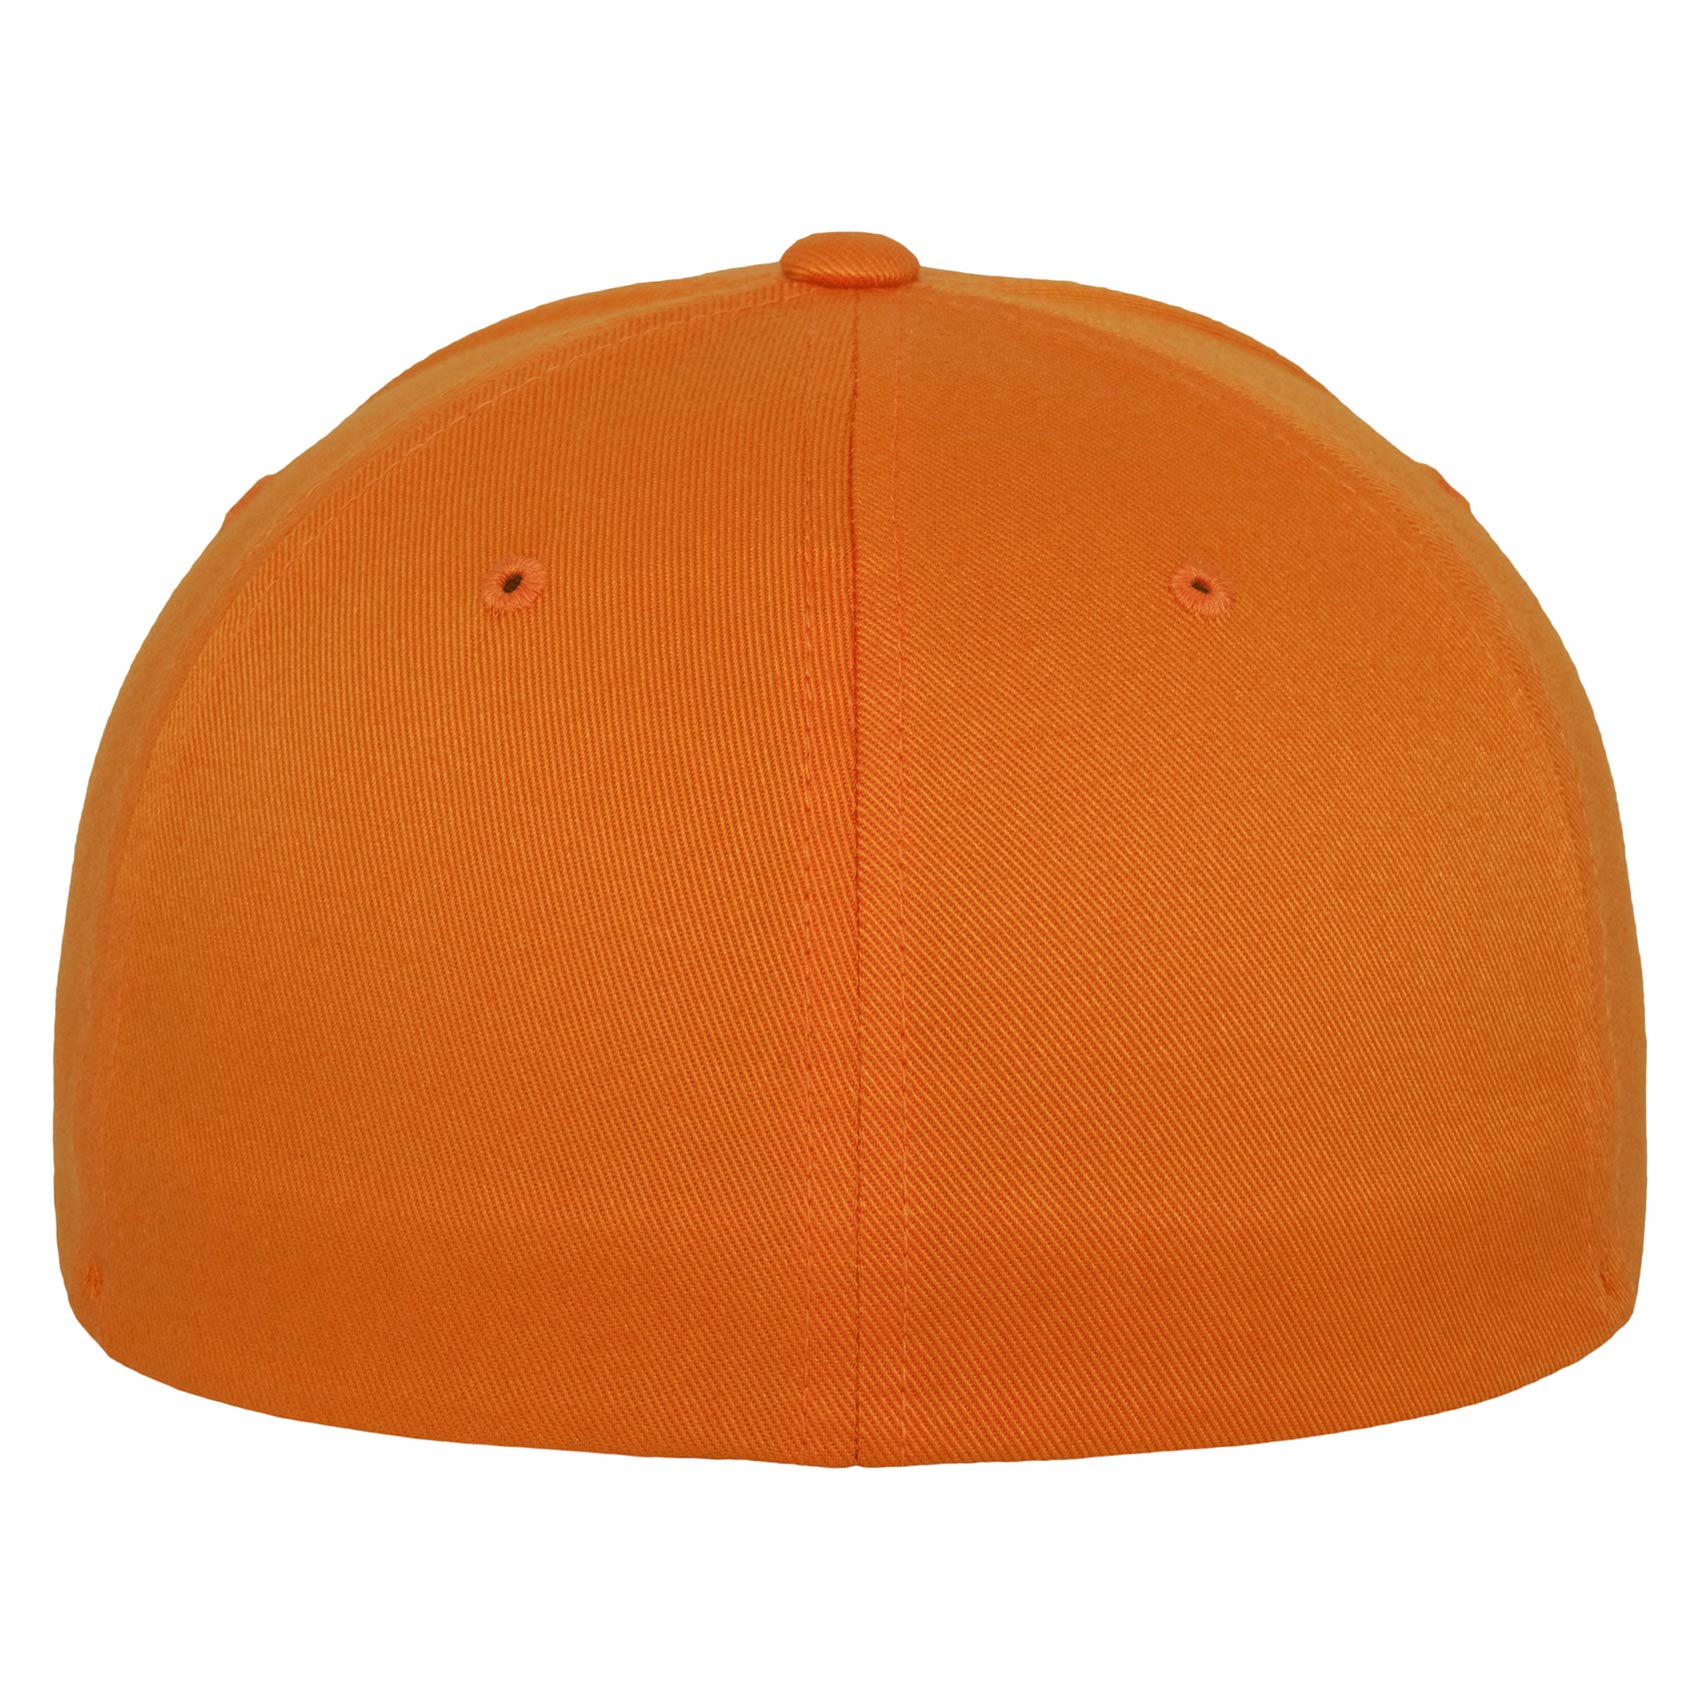 Flexfit Original Fullcap Wooly Combed (orange)